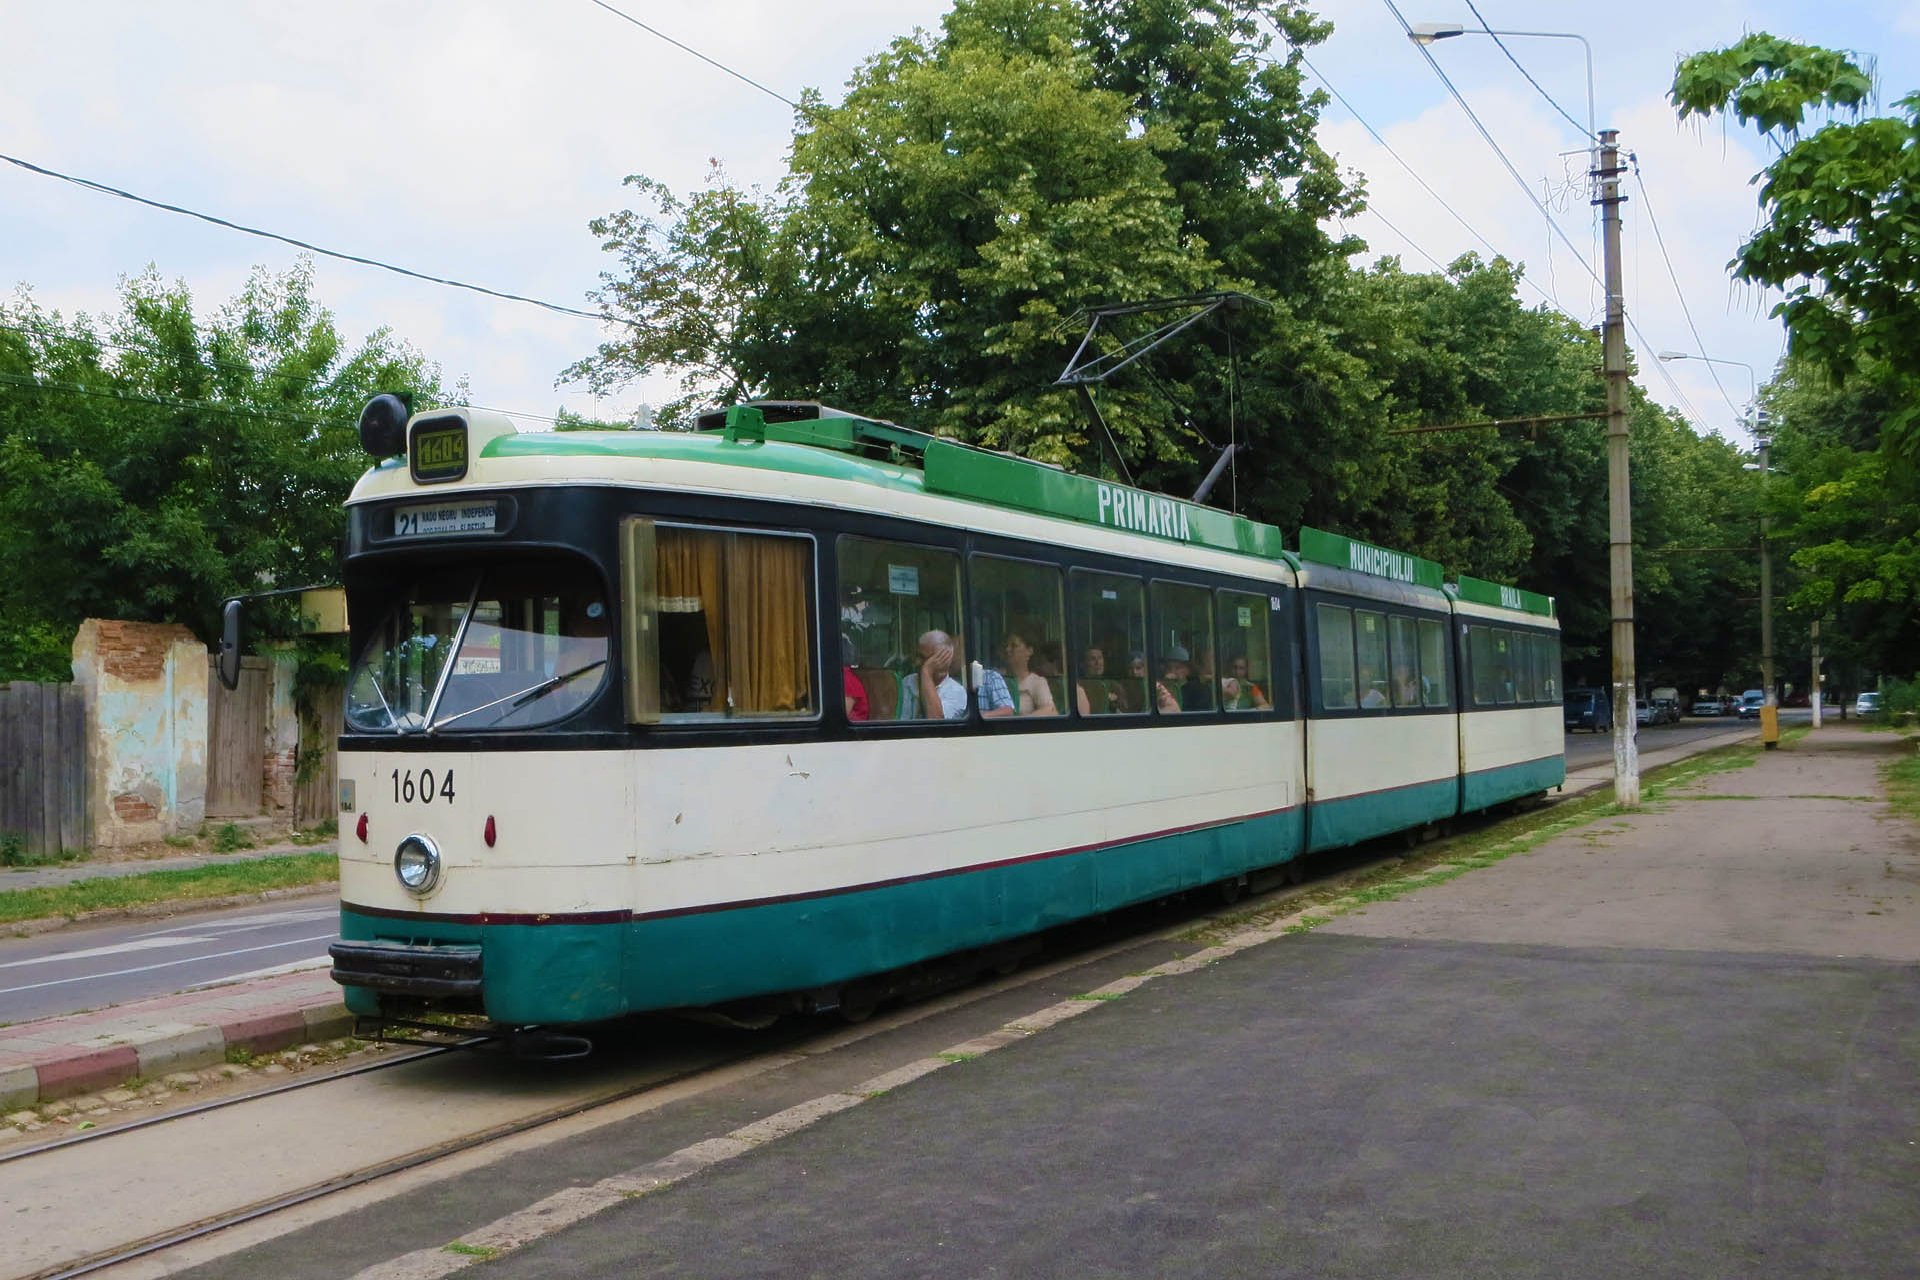 8805_57 In Braila fahren sie seit 2005 10 der ursprünglich 35 Fahrzeuge. Of the series of 35 trams some 10 came to Braila in 2005.